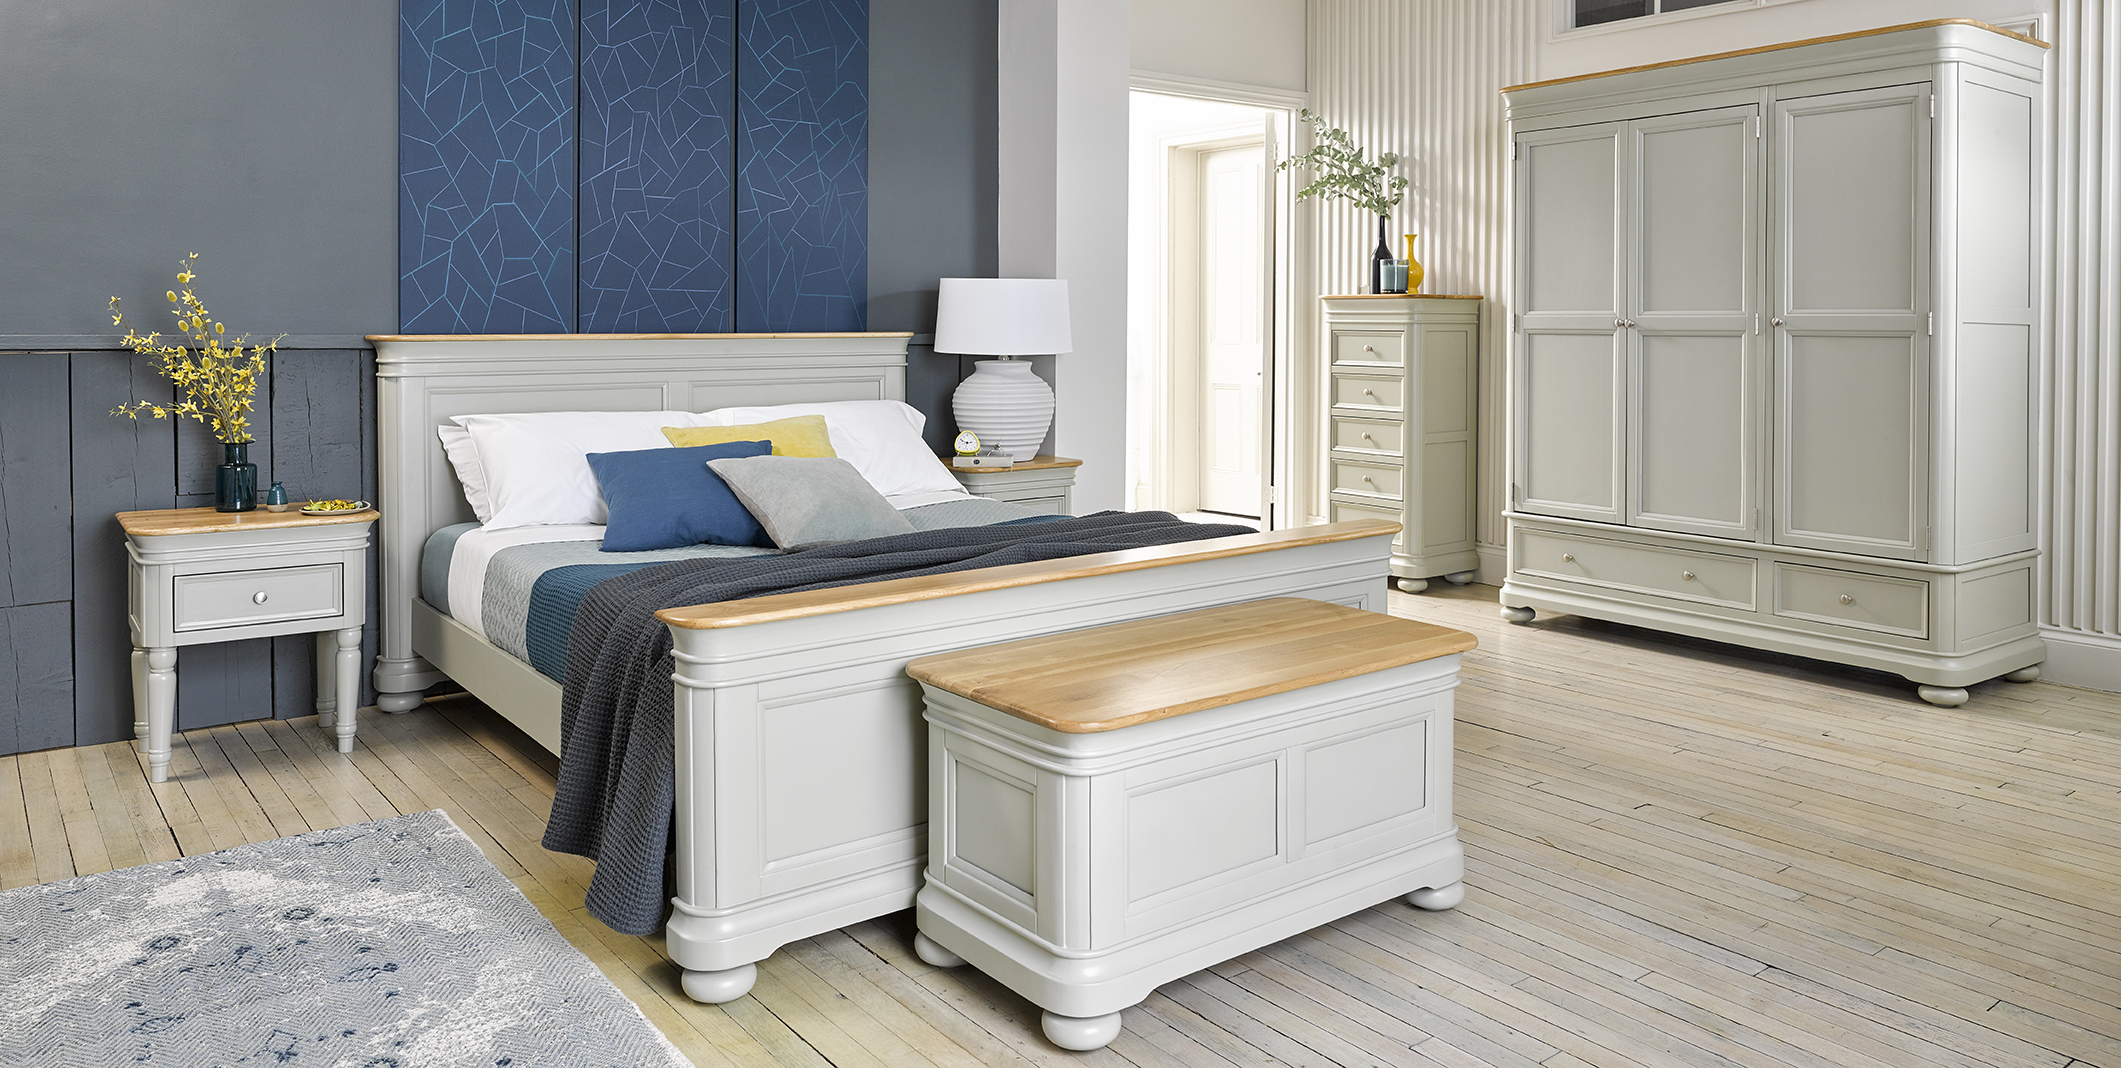 oak furnitureland bedroom furniture